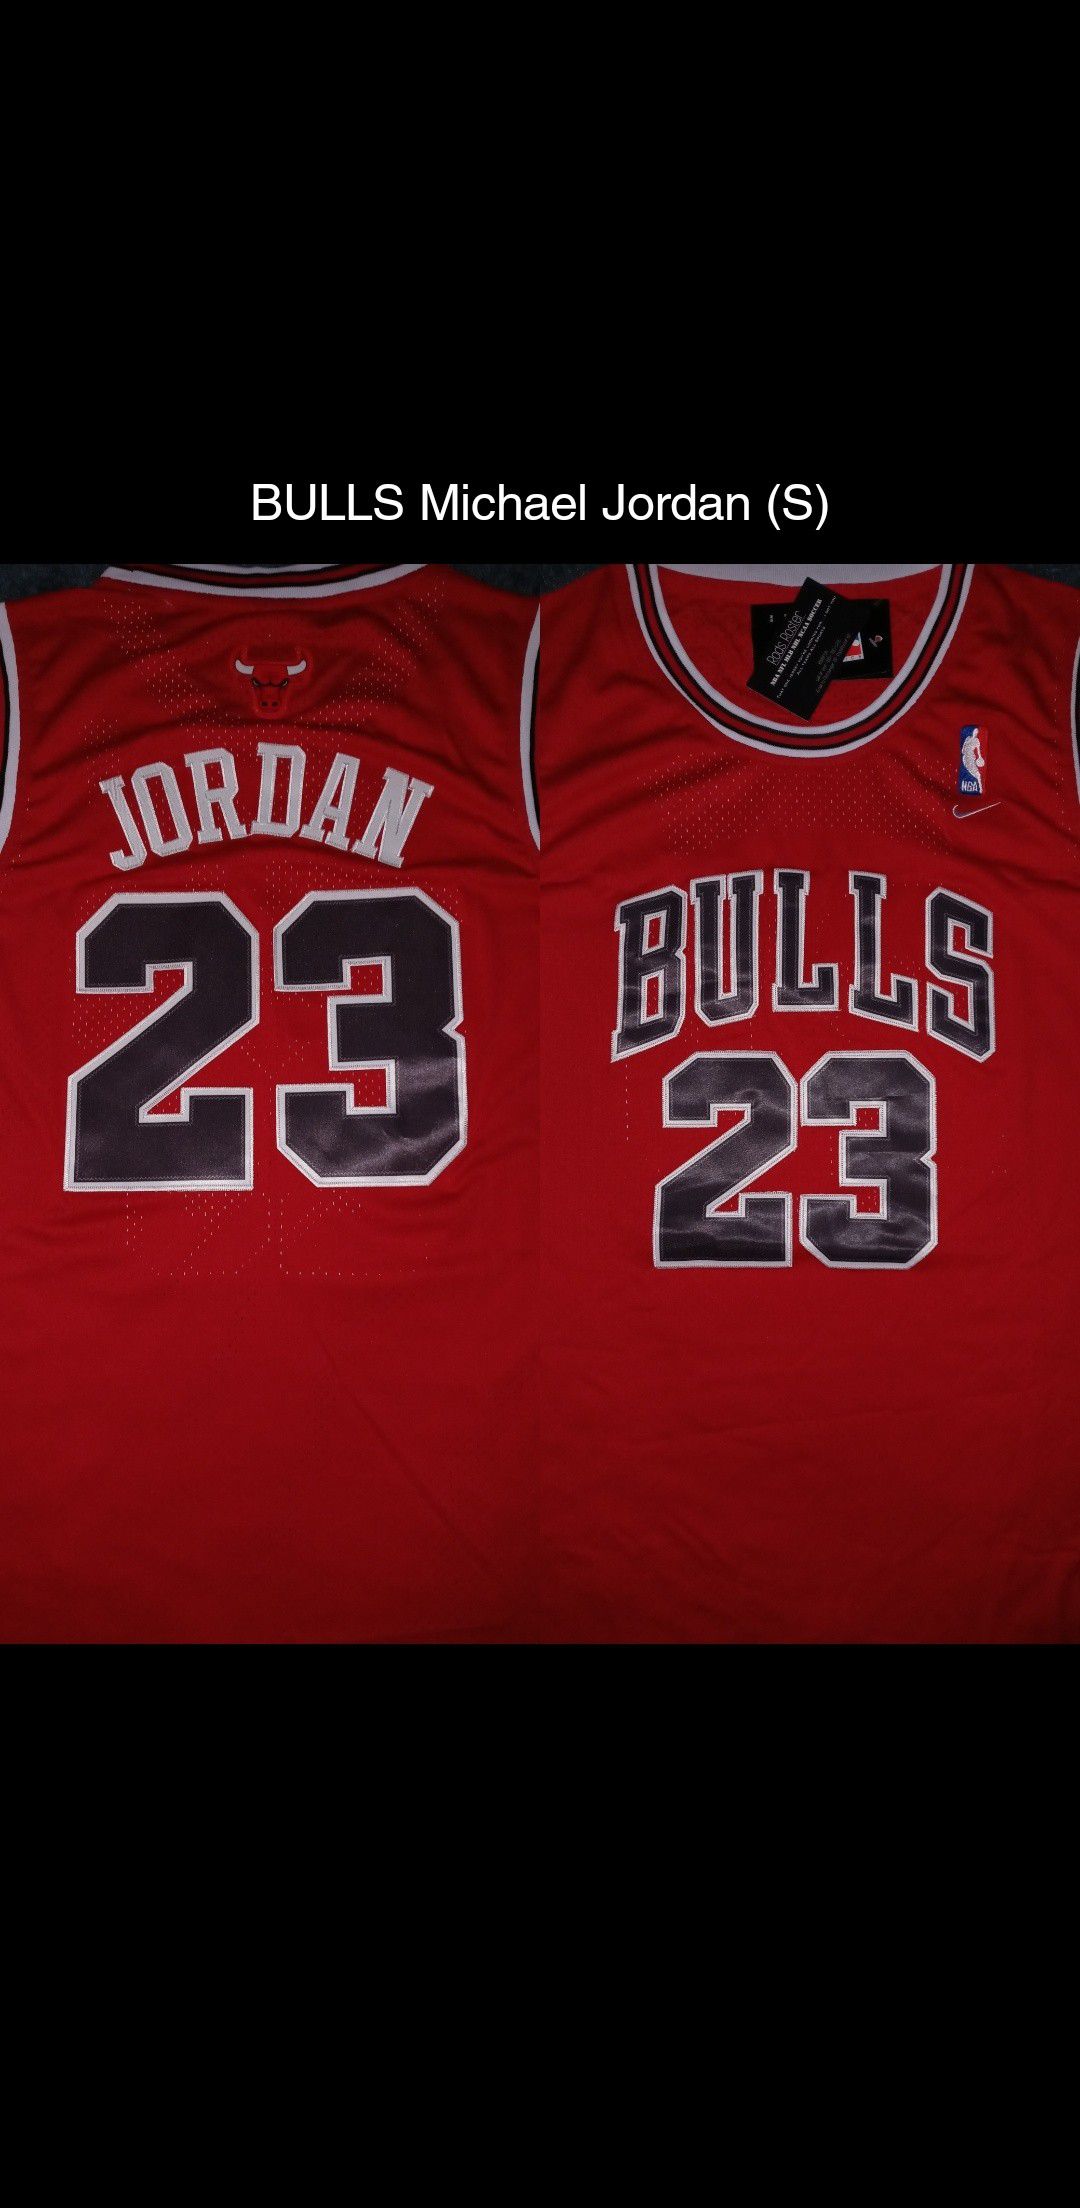 BULLS Michael Jordan jersey (S)